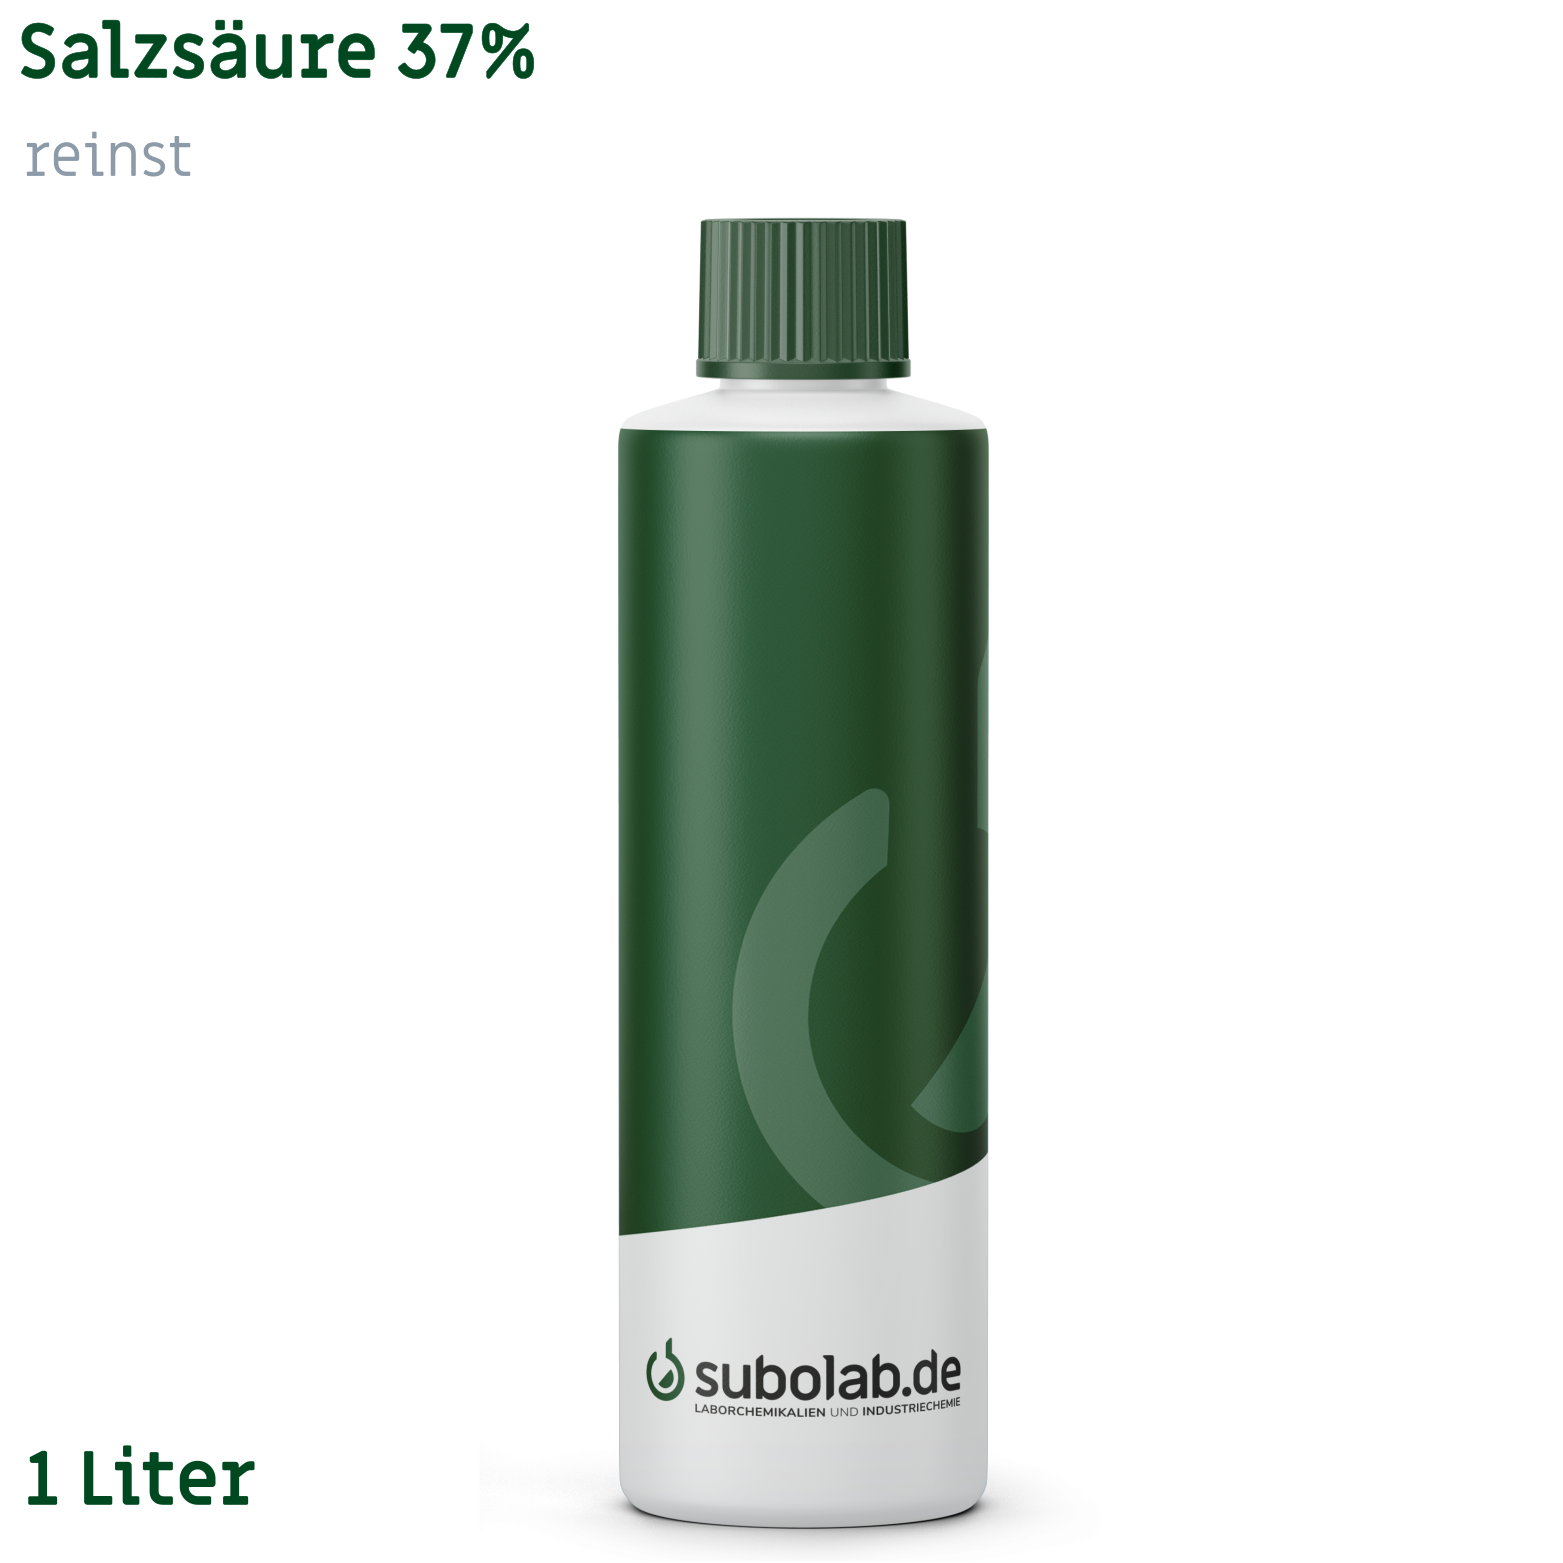 Bild von Salzsäure 37% reinst (1 Liter)